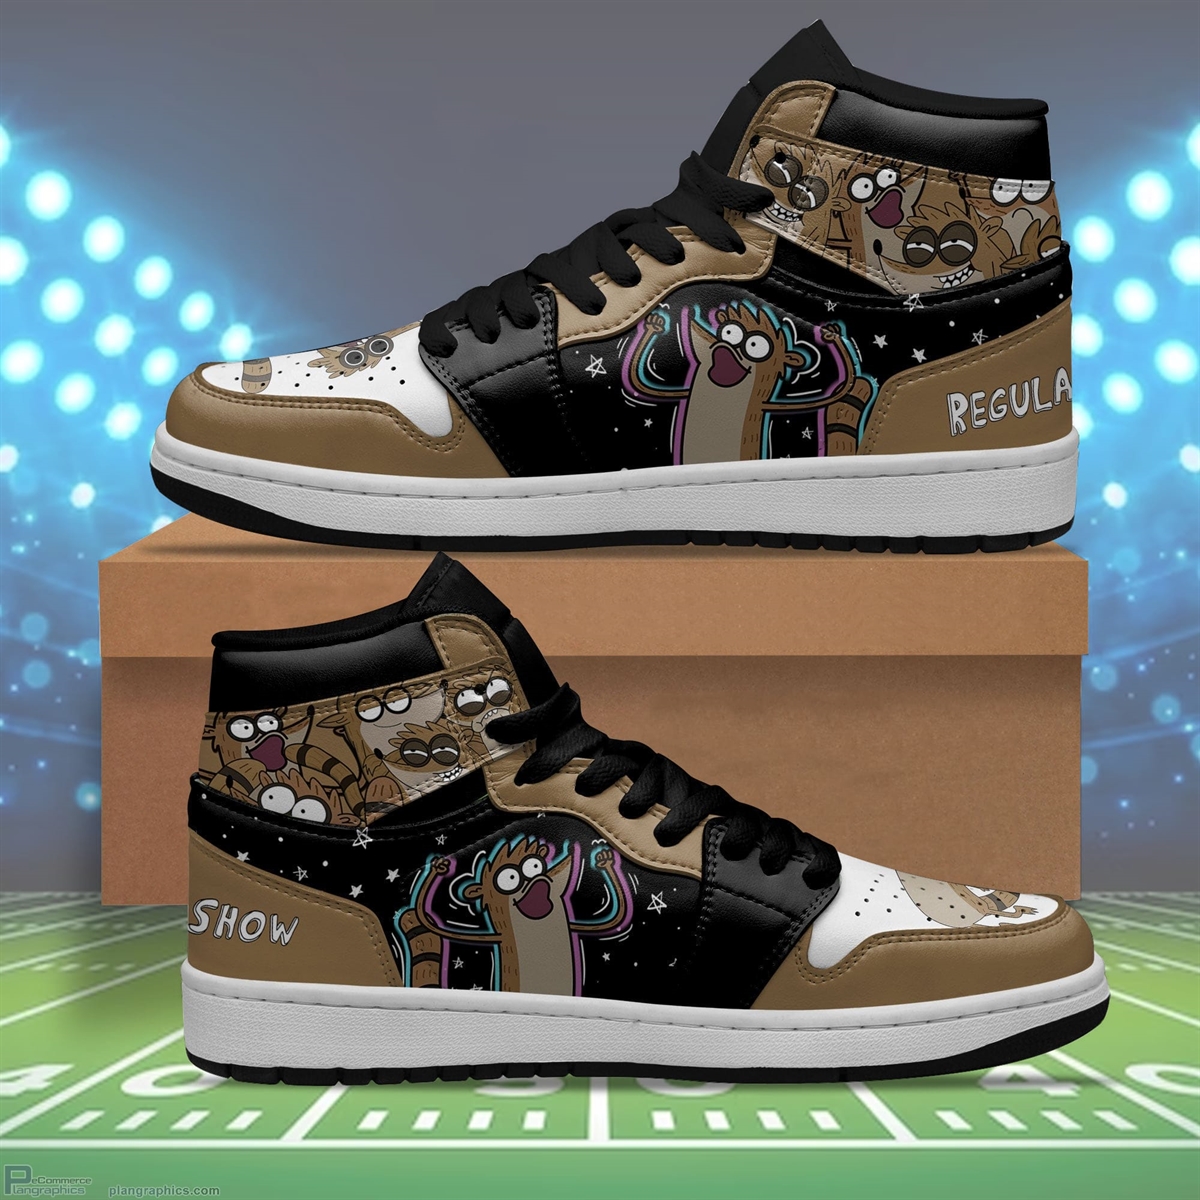 Regular Show Rigby Jordan 1 High Sneaker Boots Sneakers For Cartoon Fans